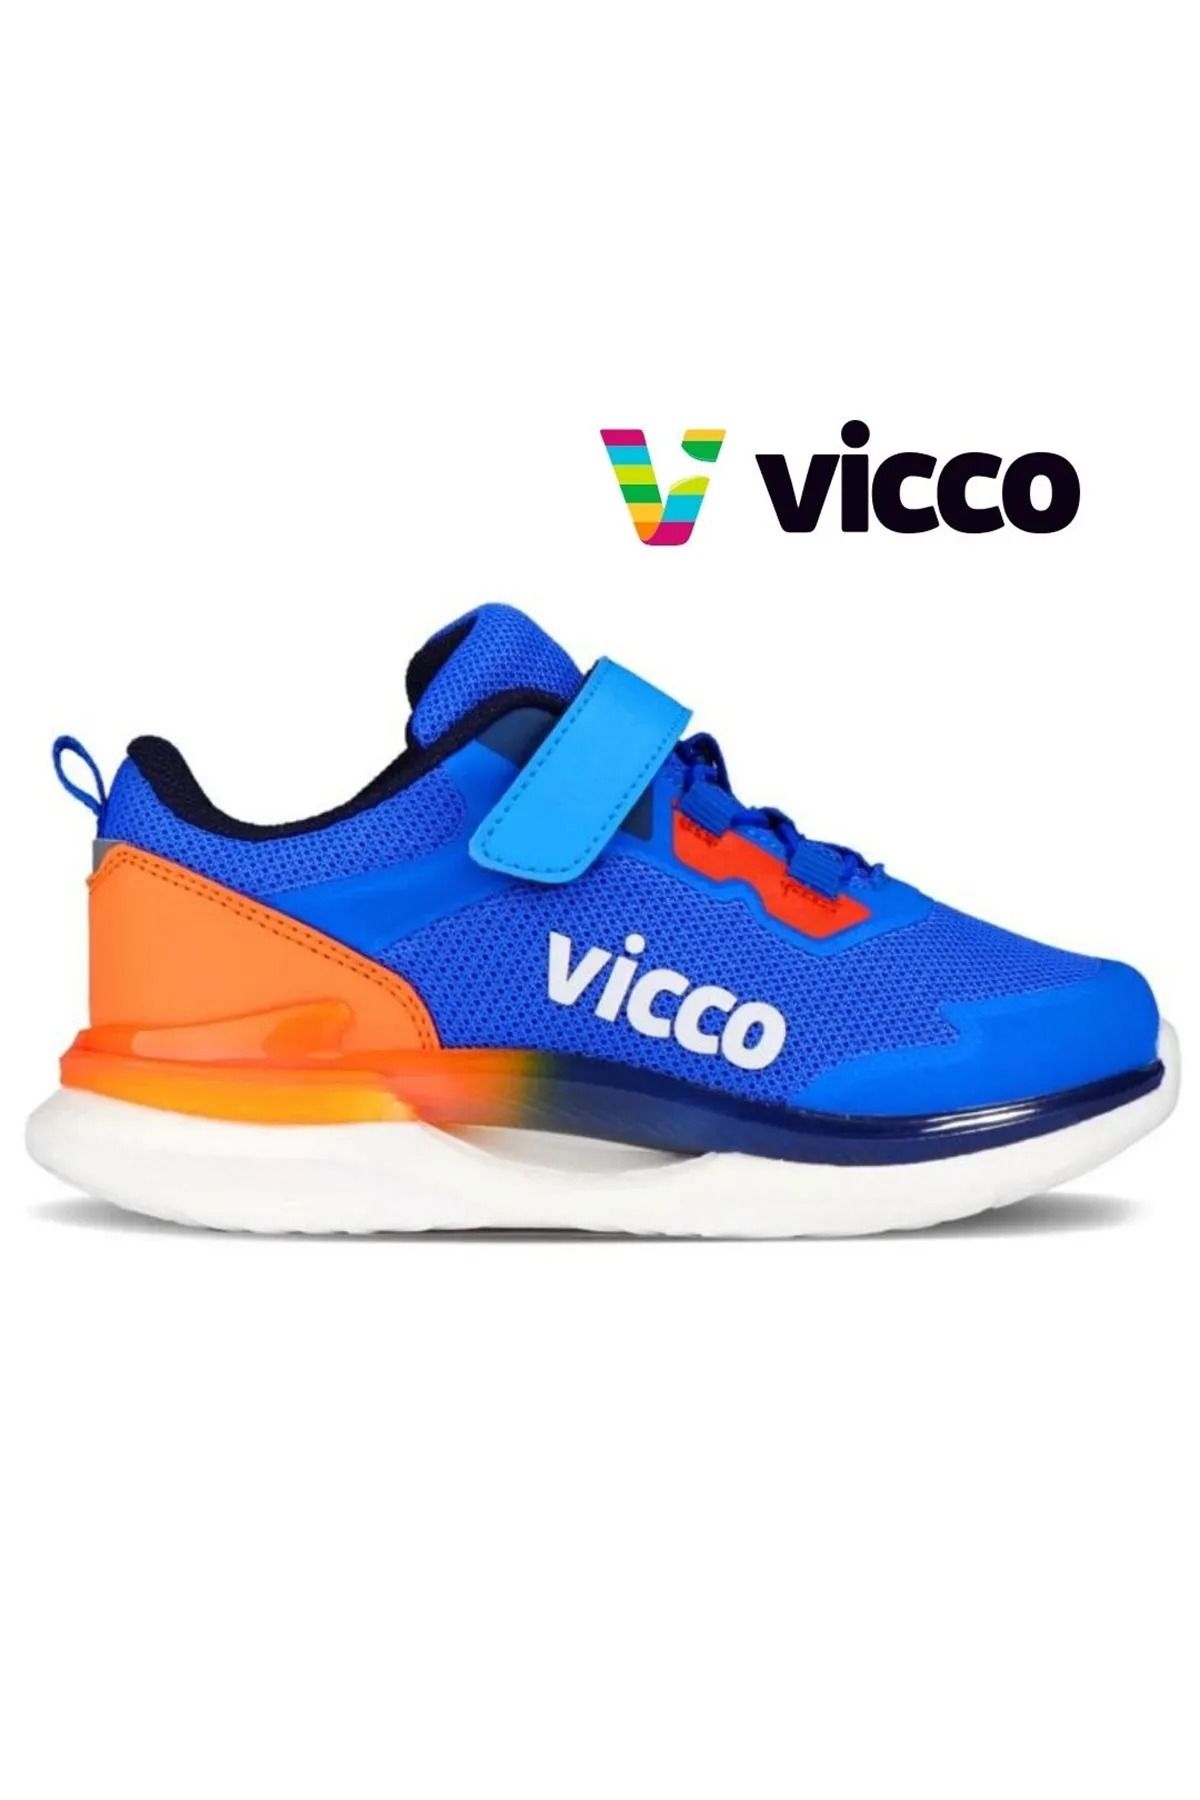 Vicco Yancy Spor Ayakkabı Erkek Çocuk, Saks Mavi